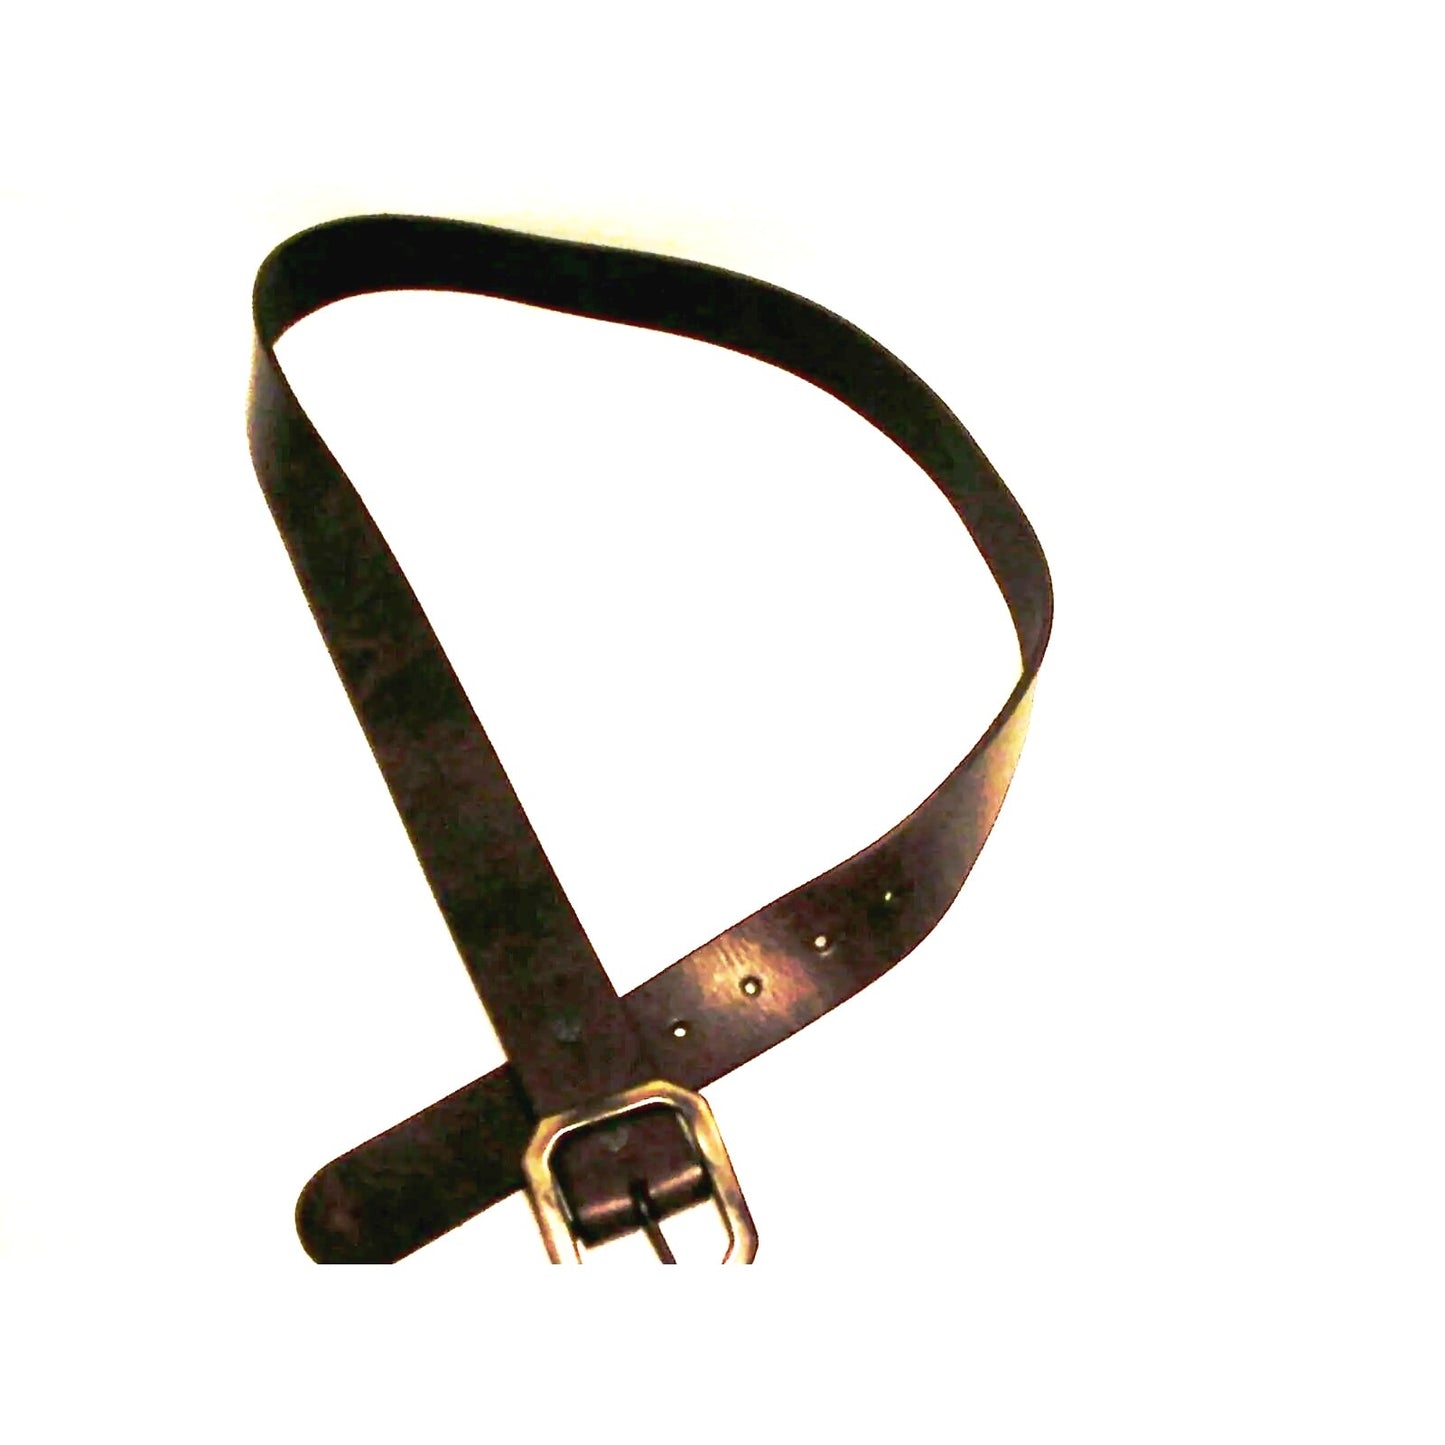 True religion mens leather belt gunmetal buckle size 38 inch dark  brown new